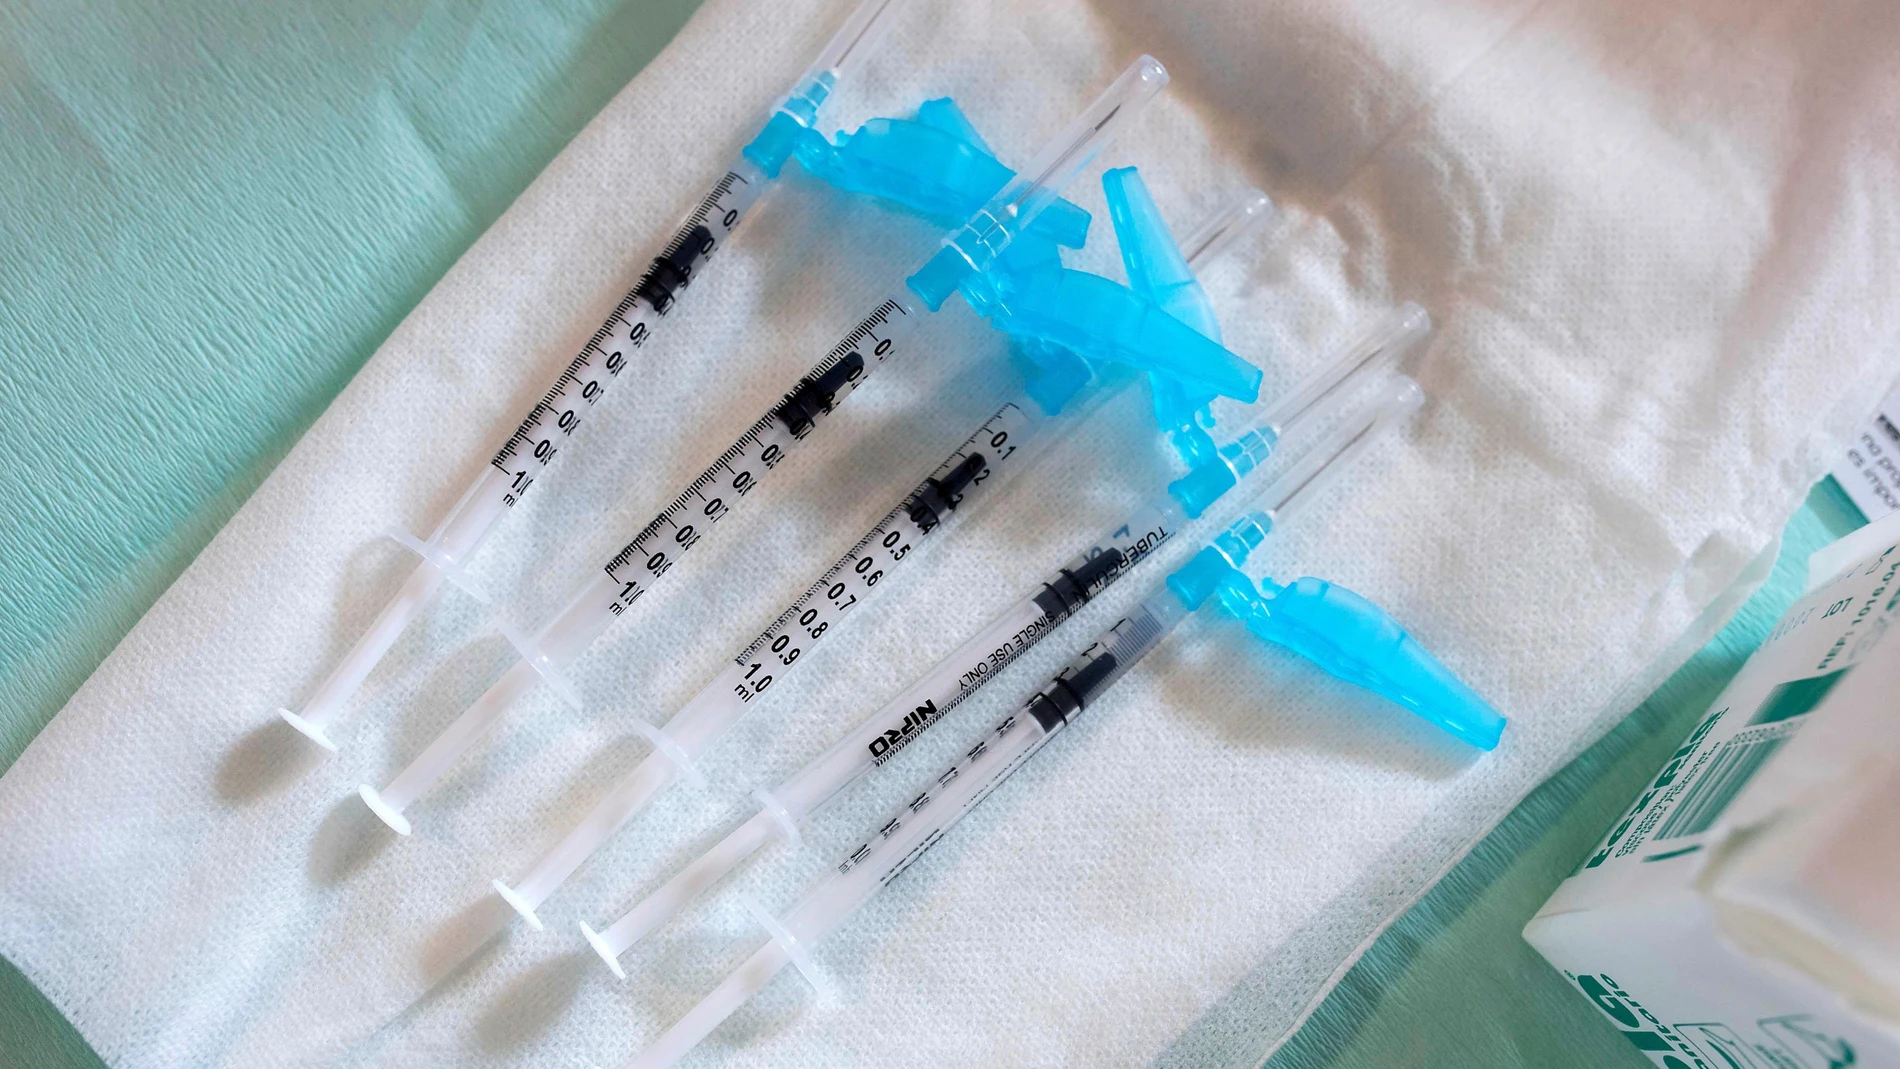 Vista de varias jeringuillas antes de su uso para inocular la vacuna durante el comienzo de la vacunación contra la covid-19.